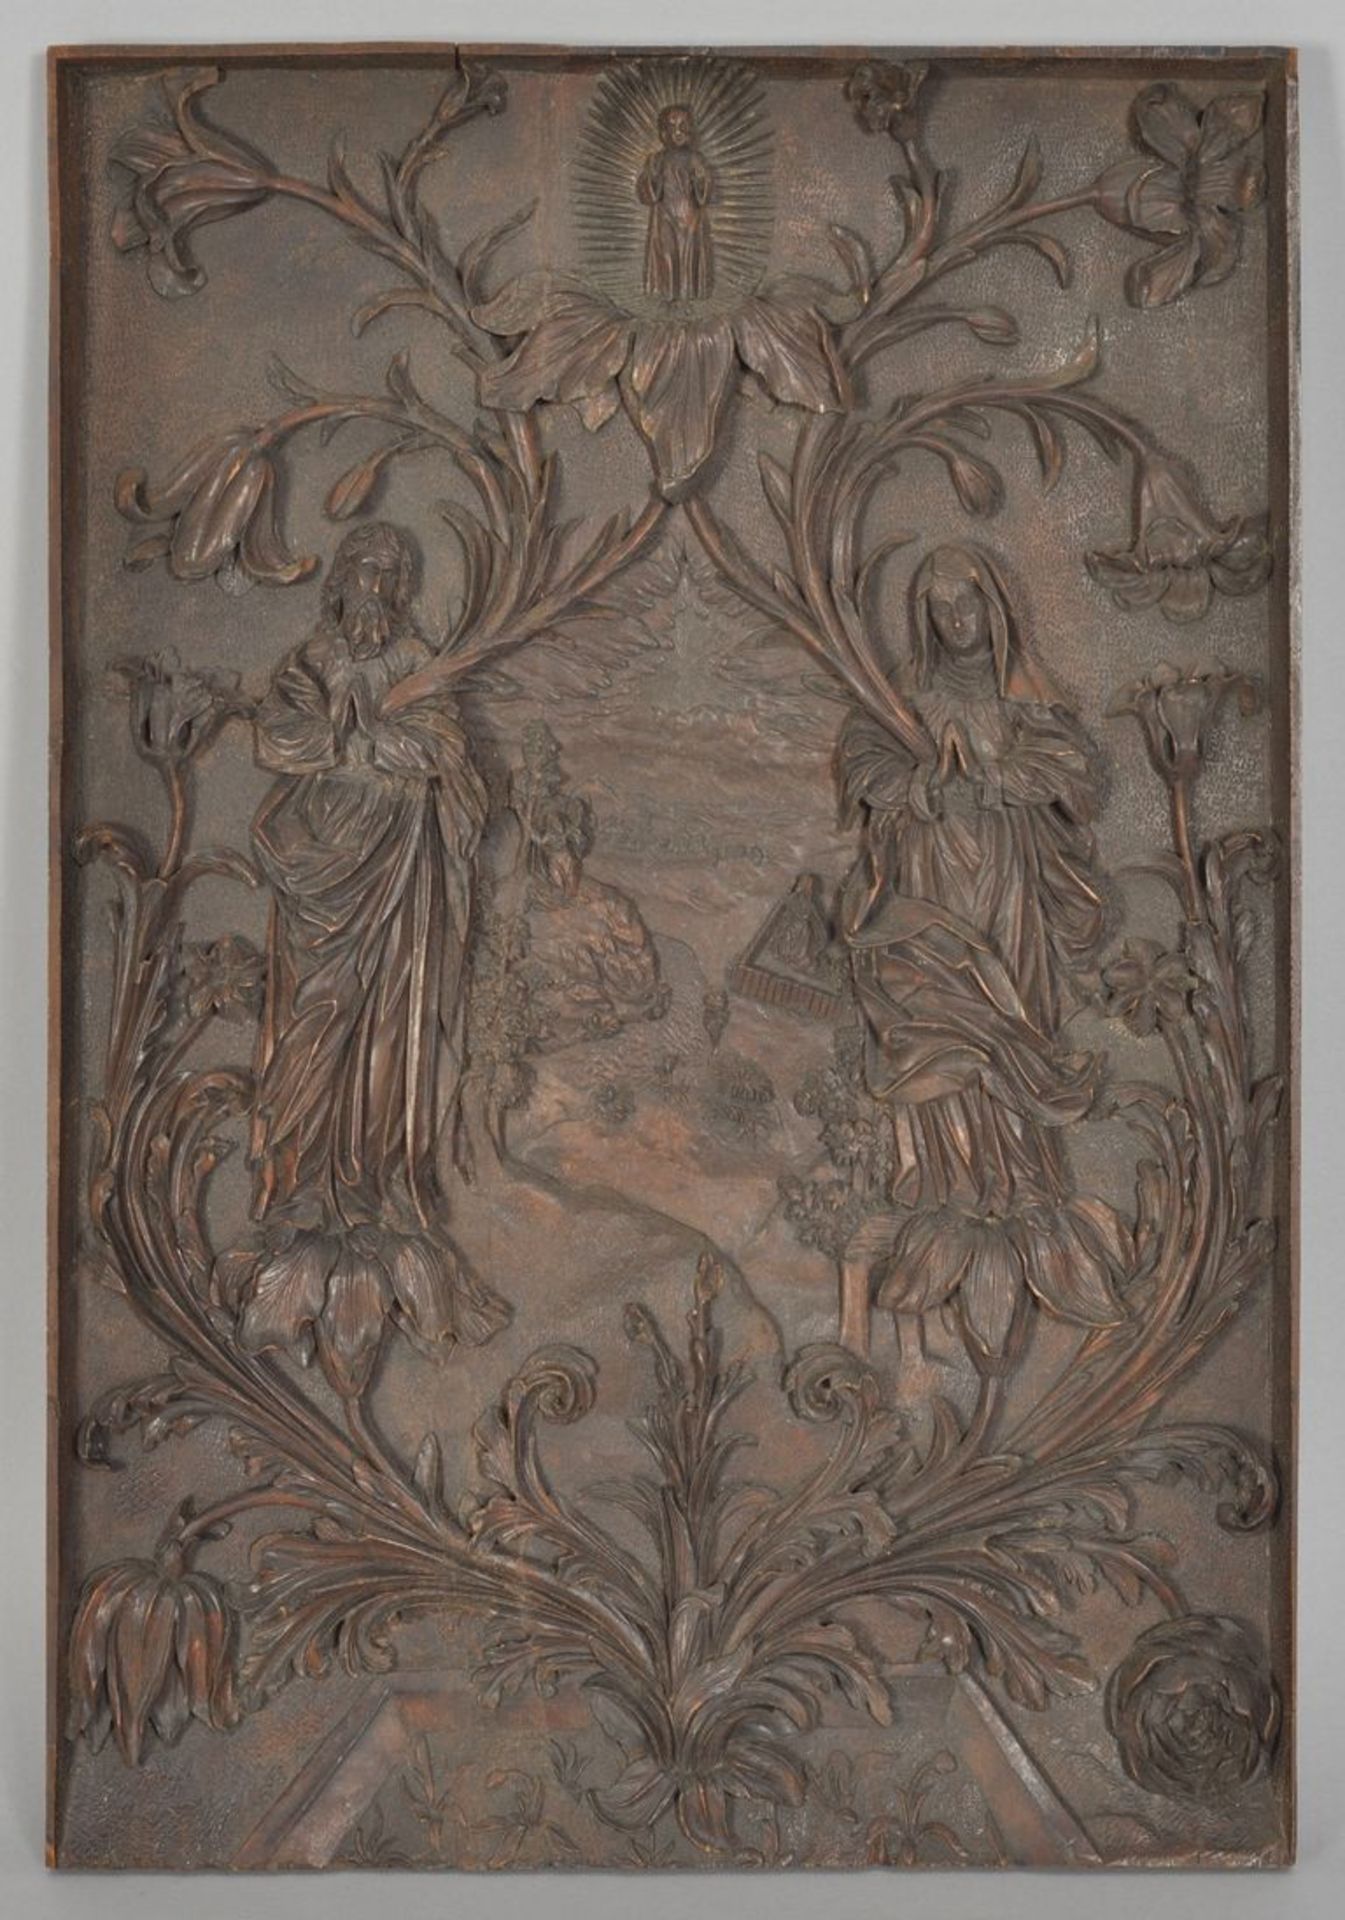 Heilige Familie, Süddeutschland, 16. Jh. oder RenaissancestilSchnitzrelief, Buchsbaum.